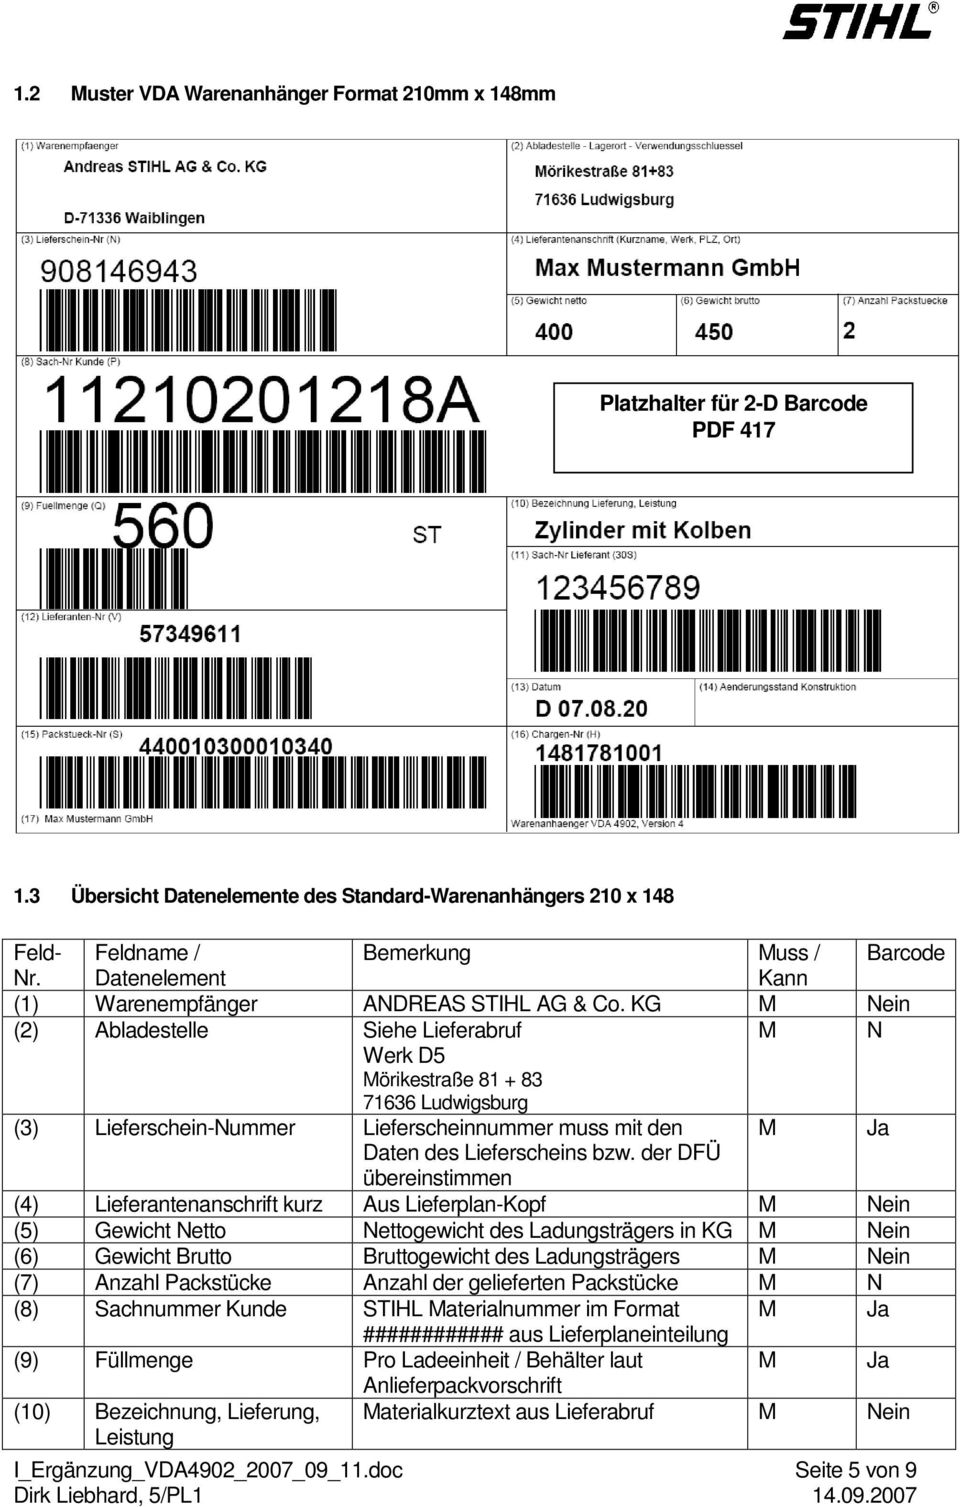 KG M Nein (2) Abladestelle Siehe Lieferabruf M N Werk D5 Mörikestraße 81 + 83 71636 Ludwigsburg (3) Lieferschein-Nummer Lieferscheinnummer muss mit den M Ja Daten des Lieferscheins bzw.